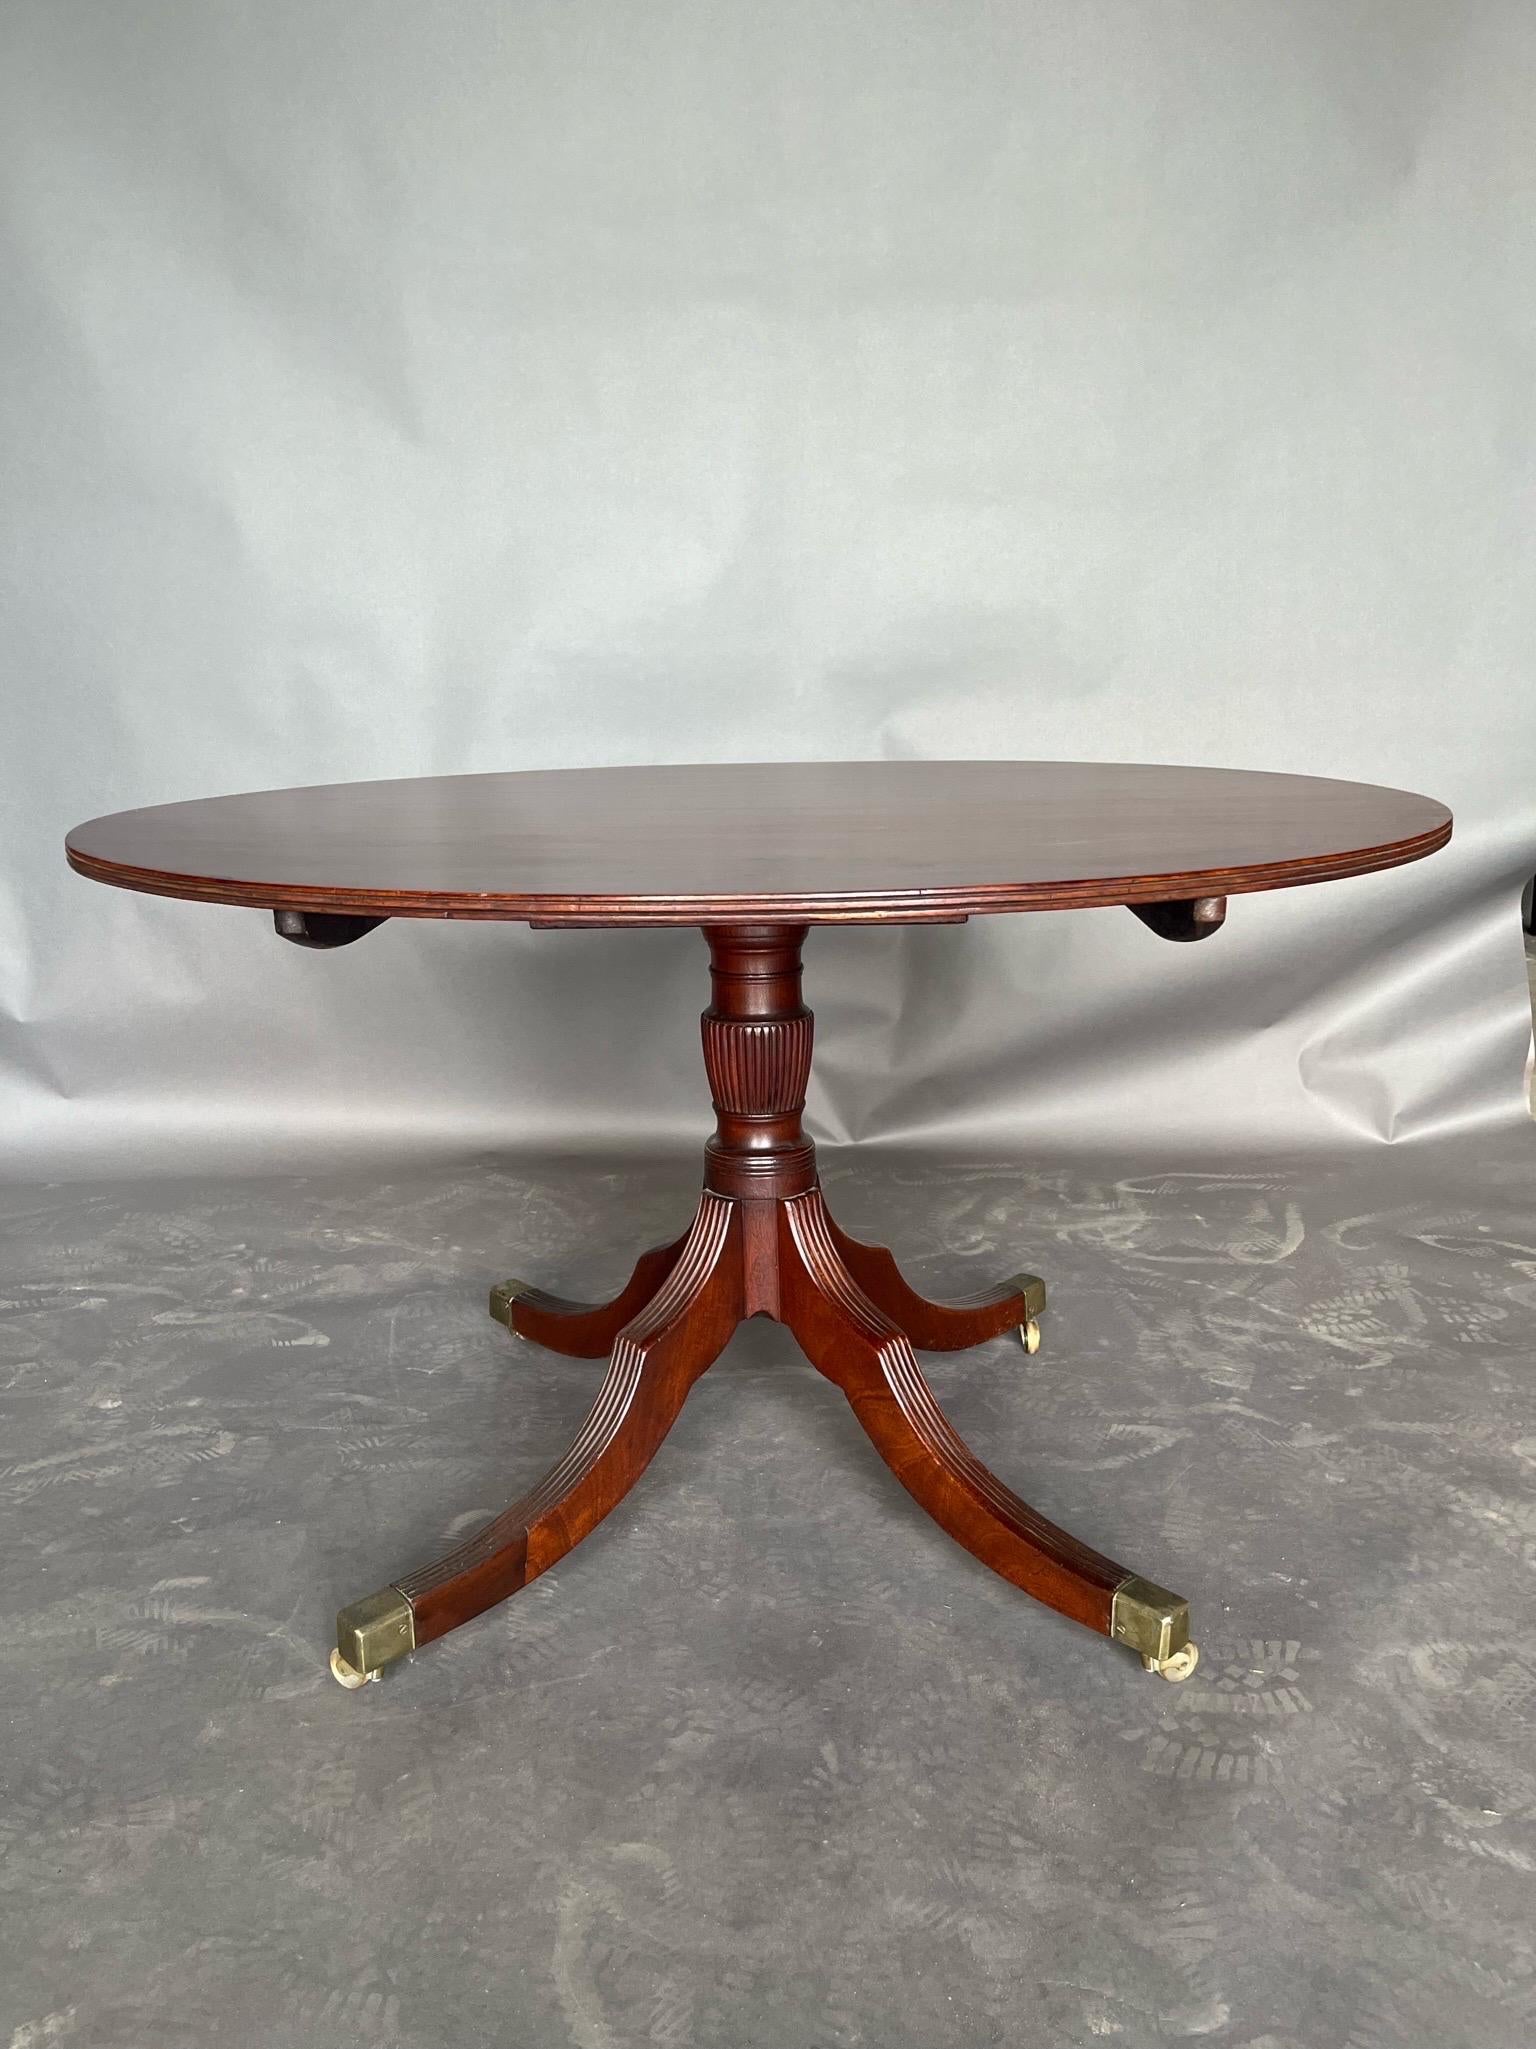 Ovaler Mahagoni-Frühstückstisch oder Mitteltisch aus der englischen Regency-Zeit des 19. Fabelhafte Farbe und Maserung oben, schöne geriffelte Beine und Original-Rollen. 